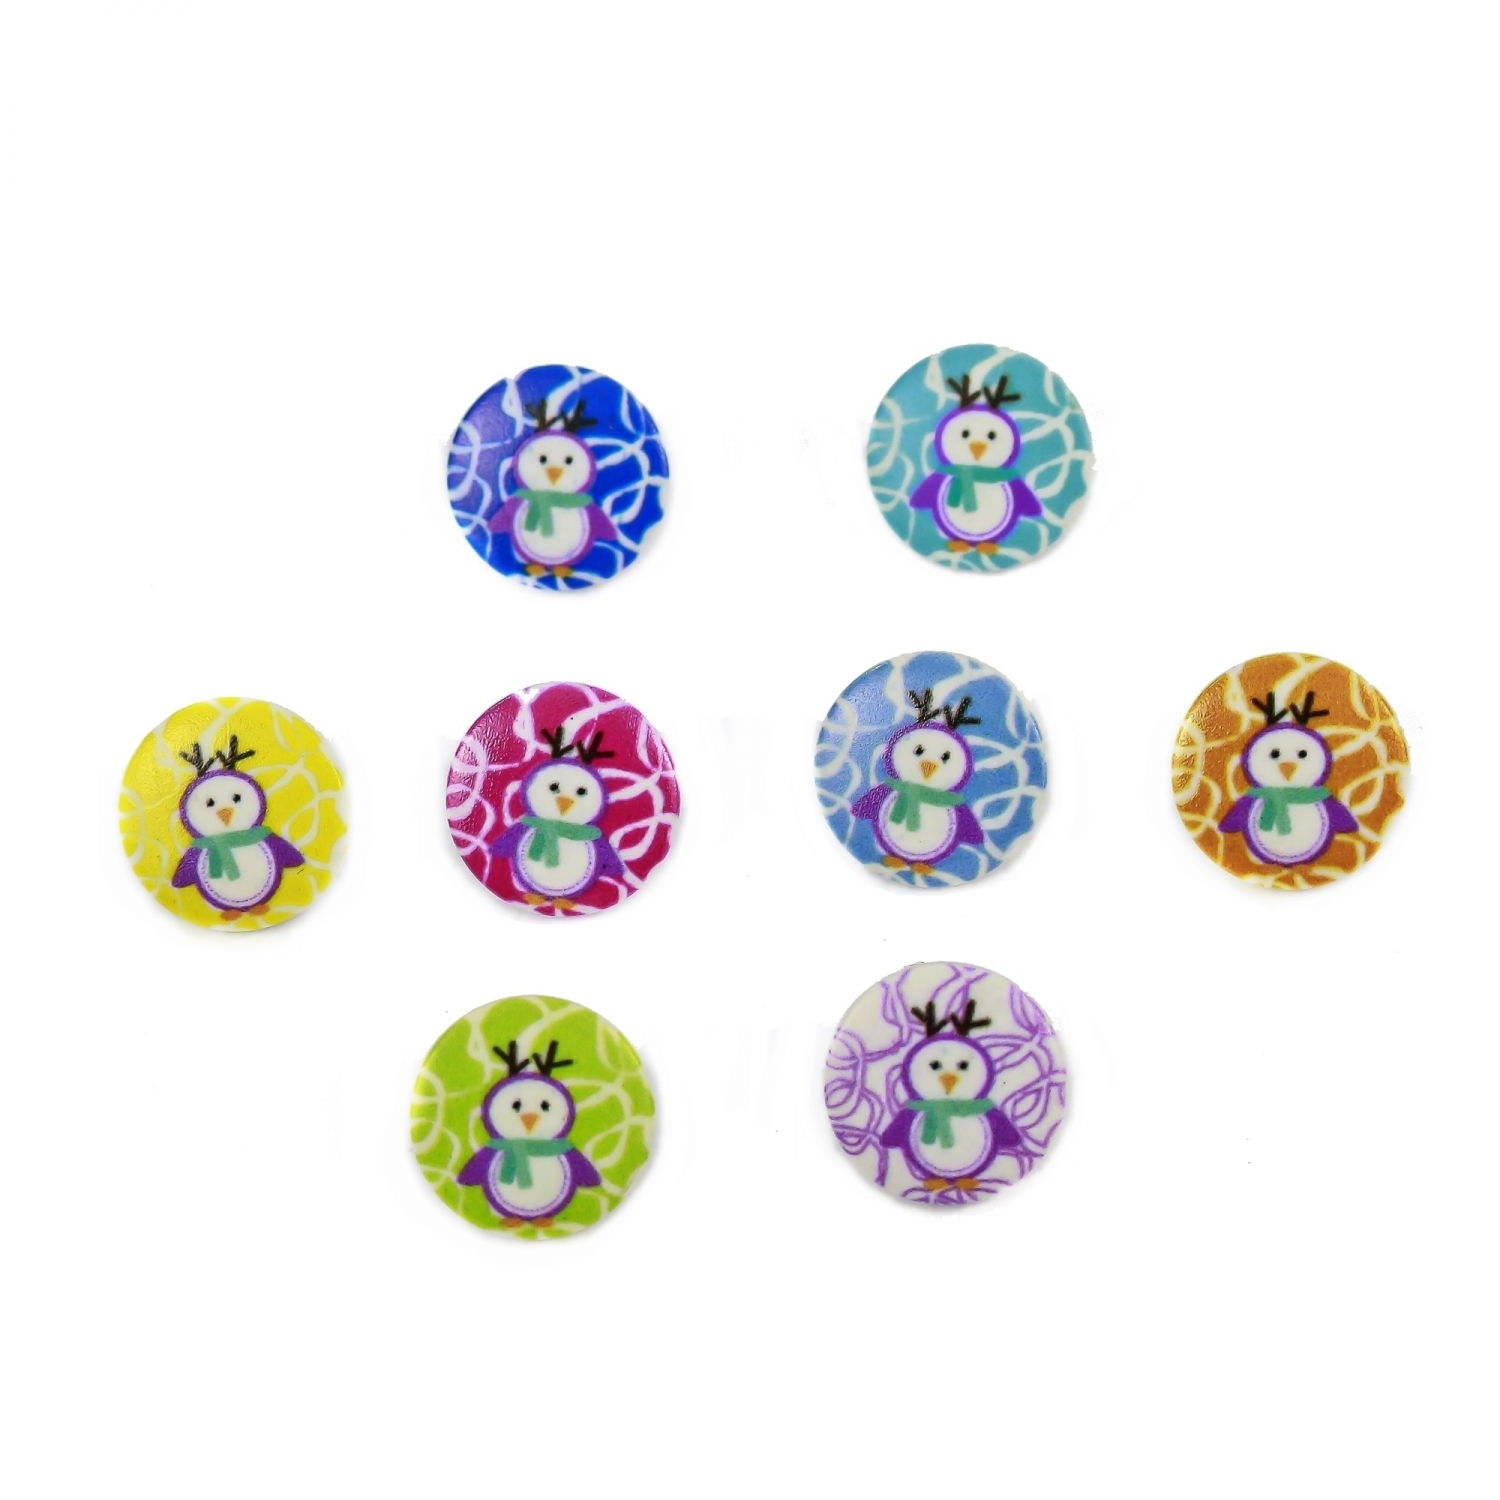 Plastic Buttons ART12-105, Size 24 (25 pcs/pack)